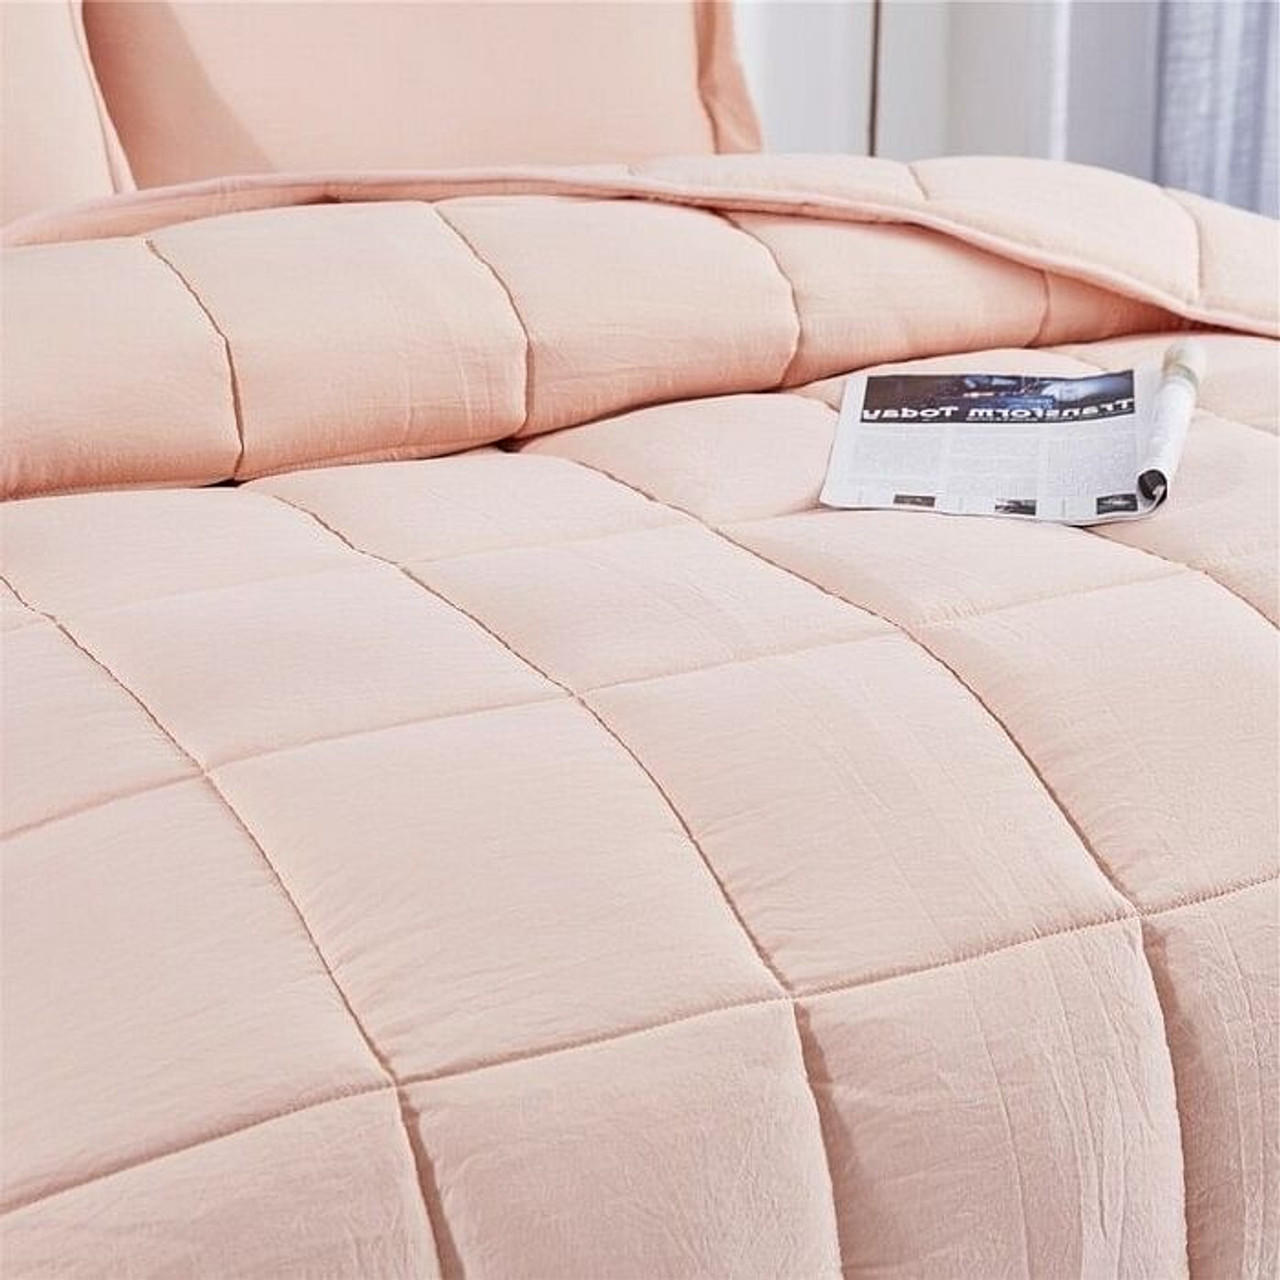 Queen Size Pink 3 Piece Microfiber Reversible Comforter Set